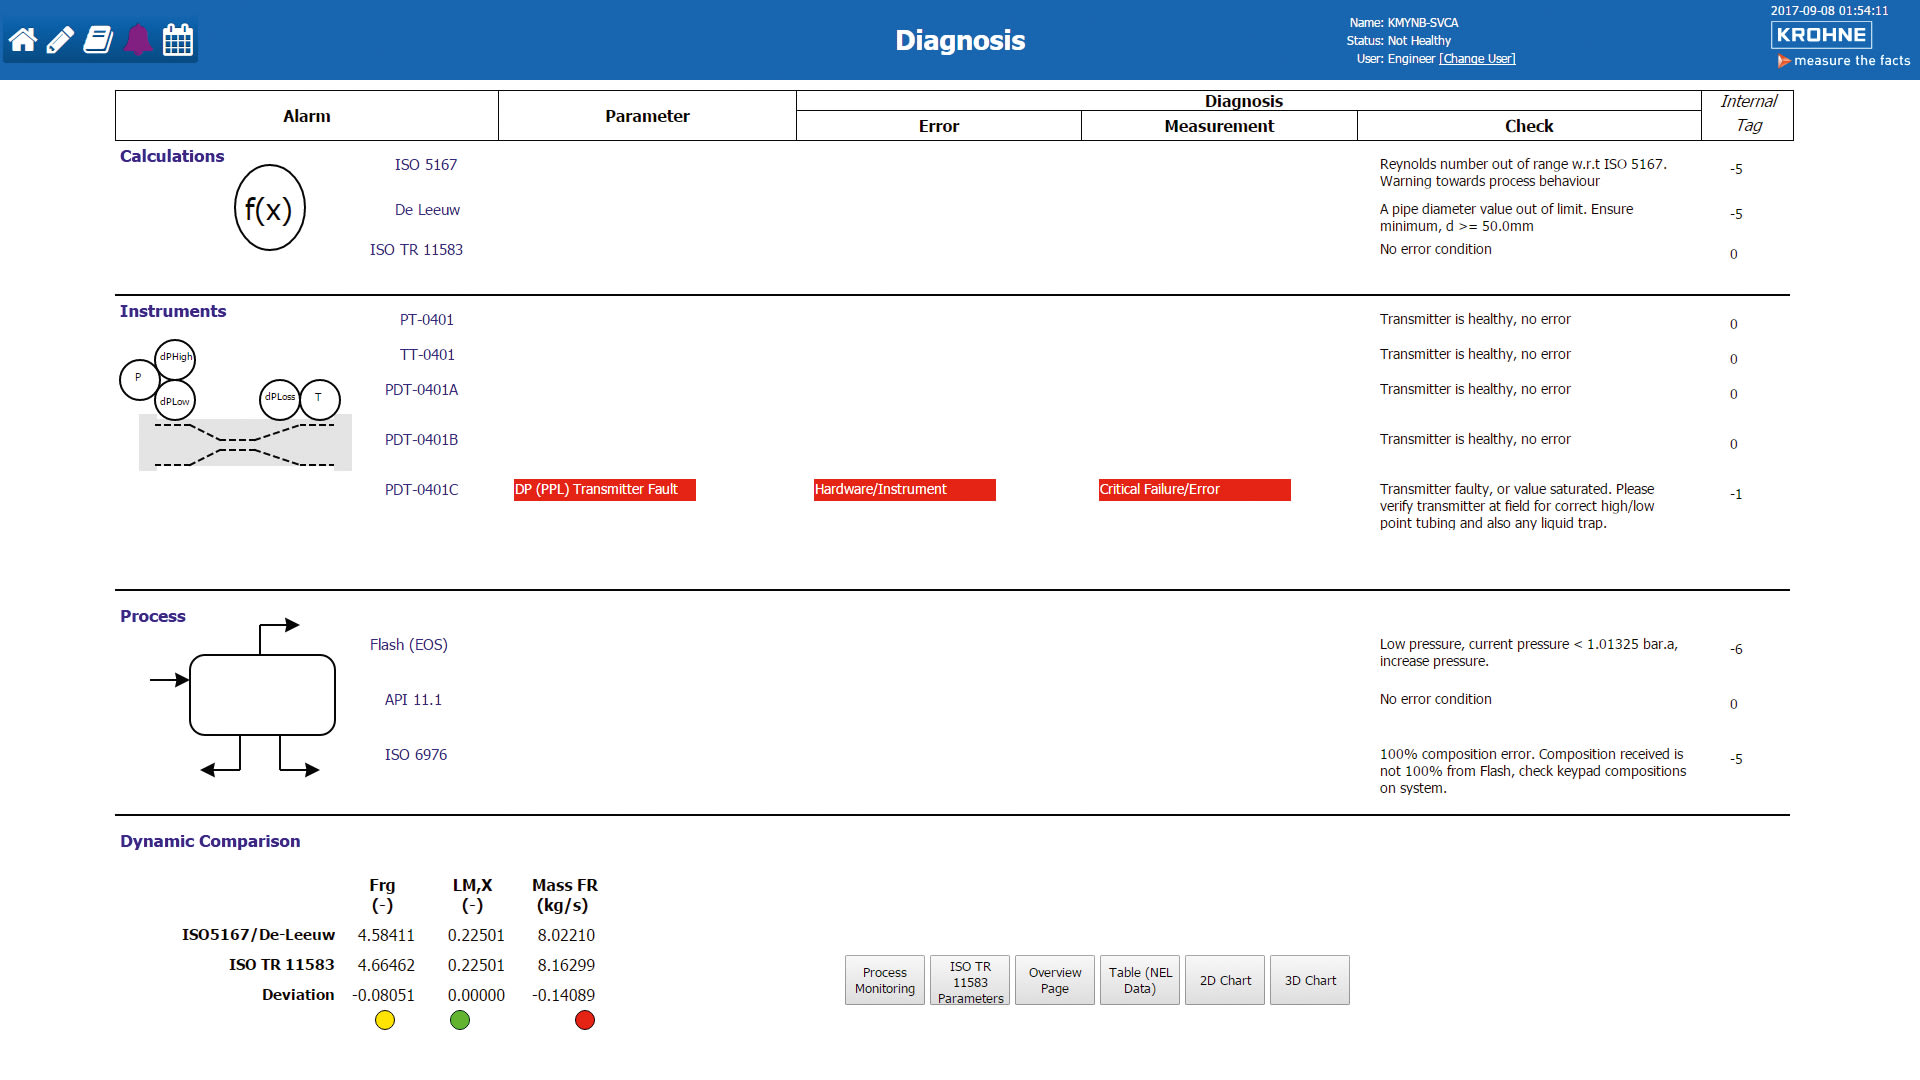 Pantalla típica de diagnóstico del WGS con alarmas y áreas del sistema afectadas, desde el pozo al ciclo de cálculo